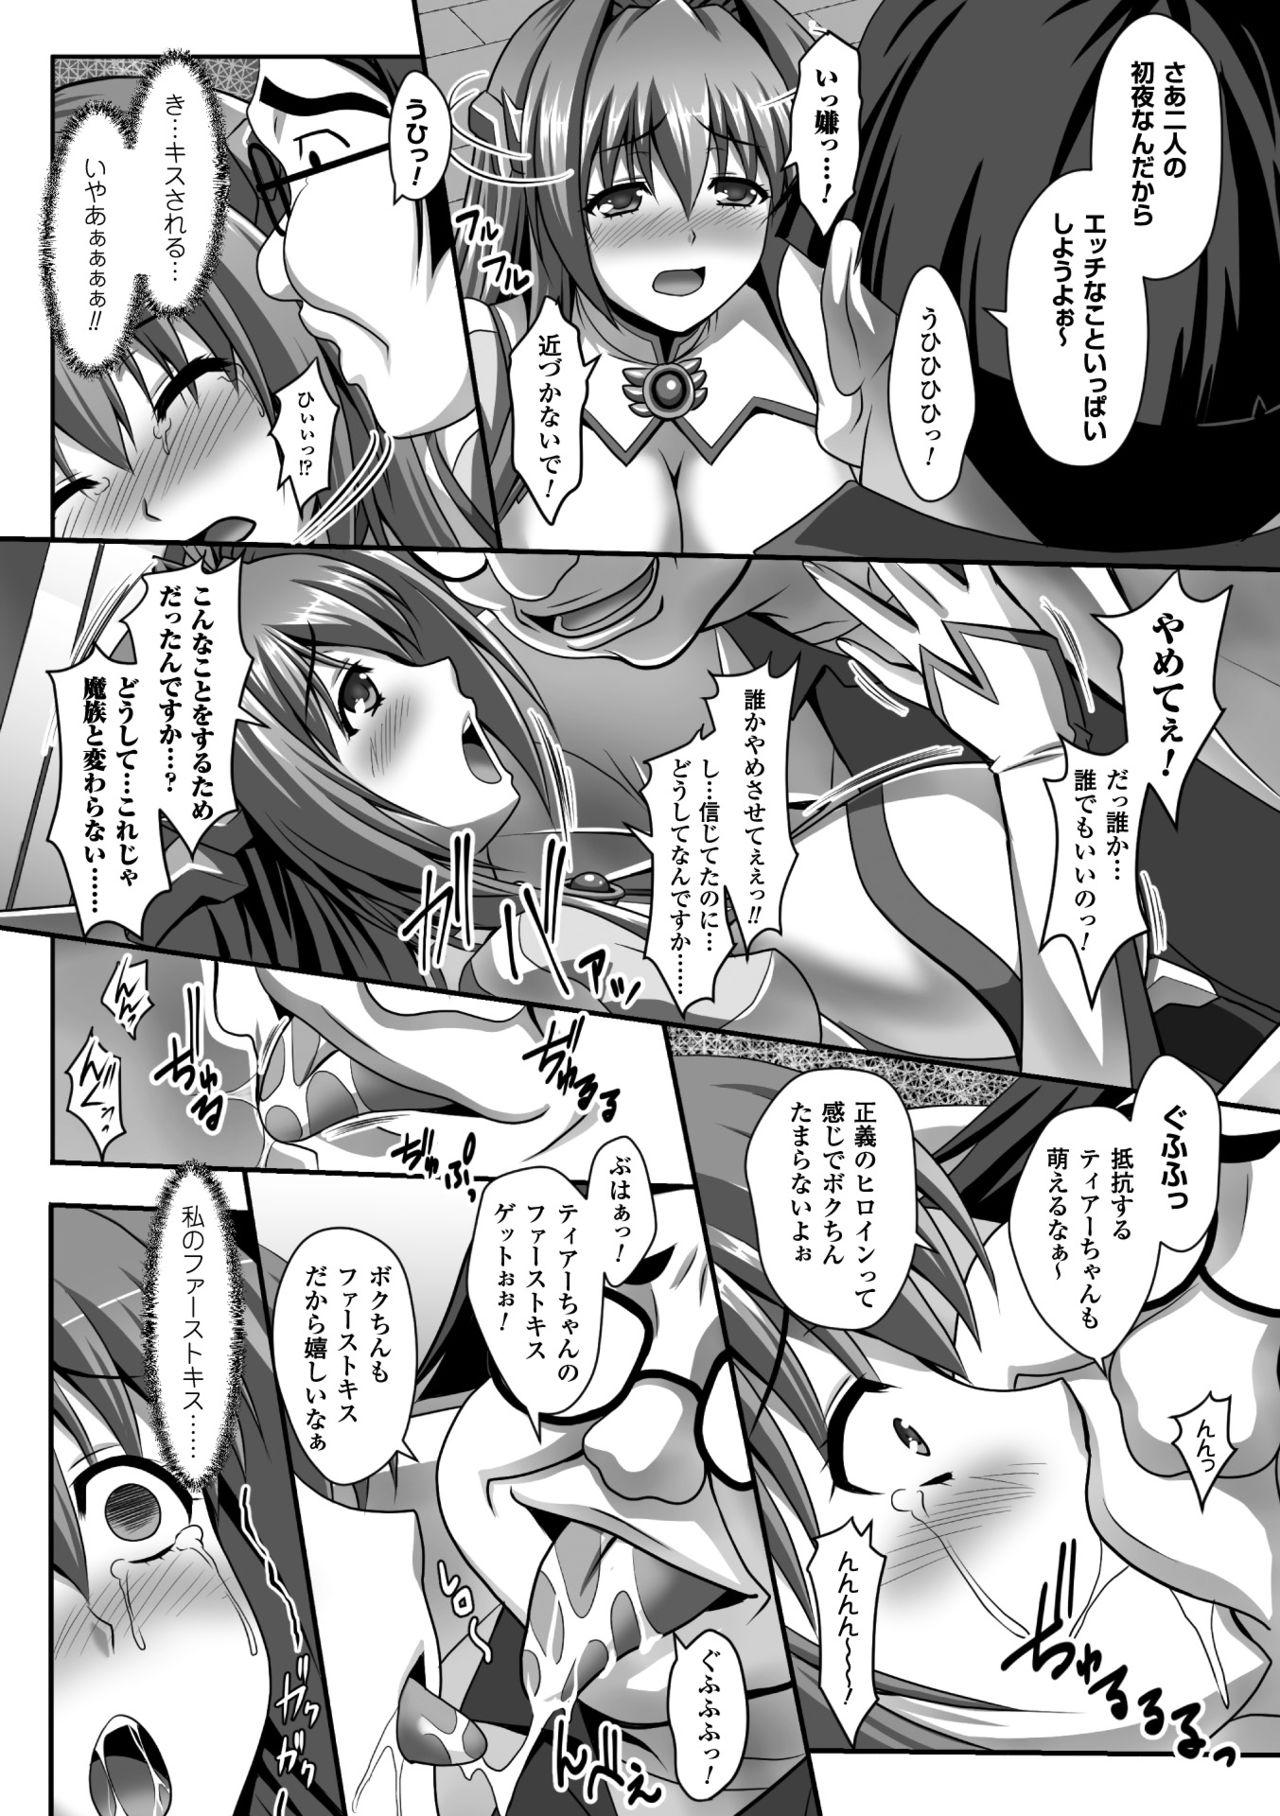 Seigi no Heroine Kangoku File Vol. 5 13